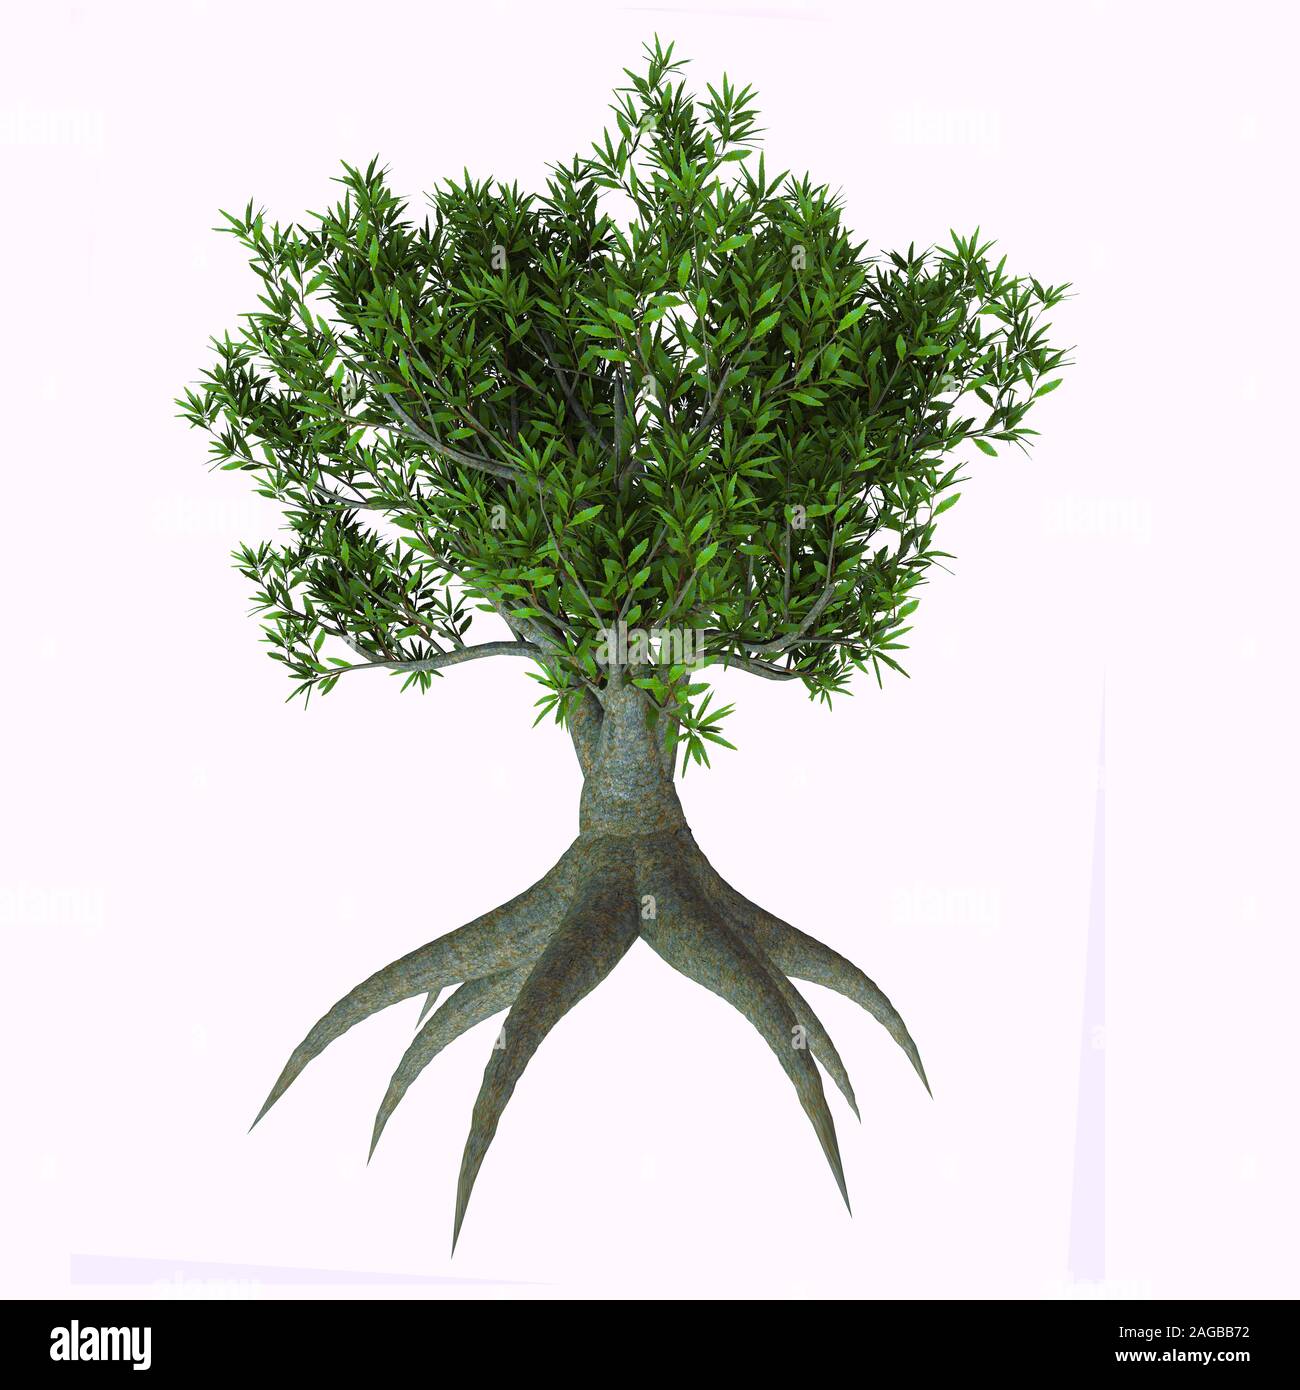 Sah Banksia Baum - Banksia serrata ist eine Frucht Strauch oder Baum an der Ostküste von Australien und hat üppige Laub. Stockfoto